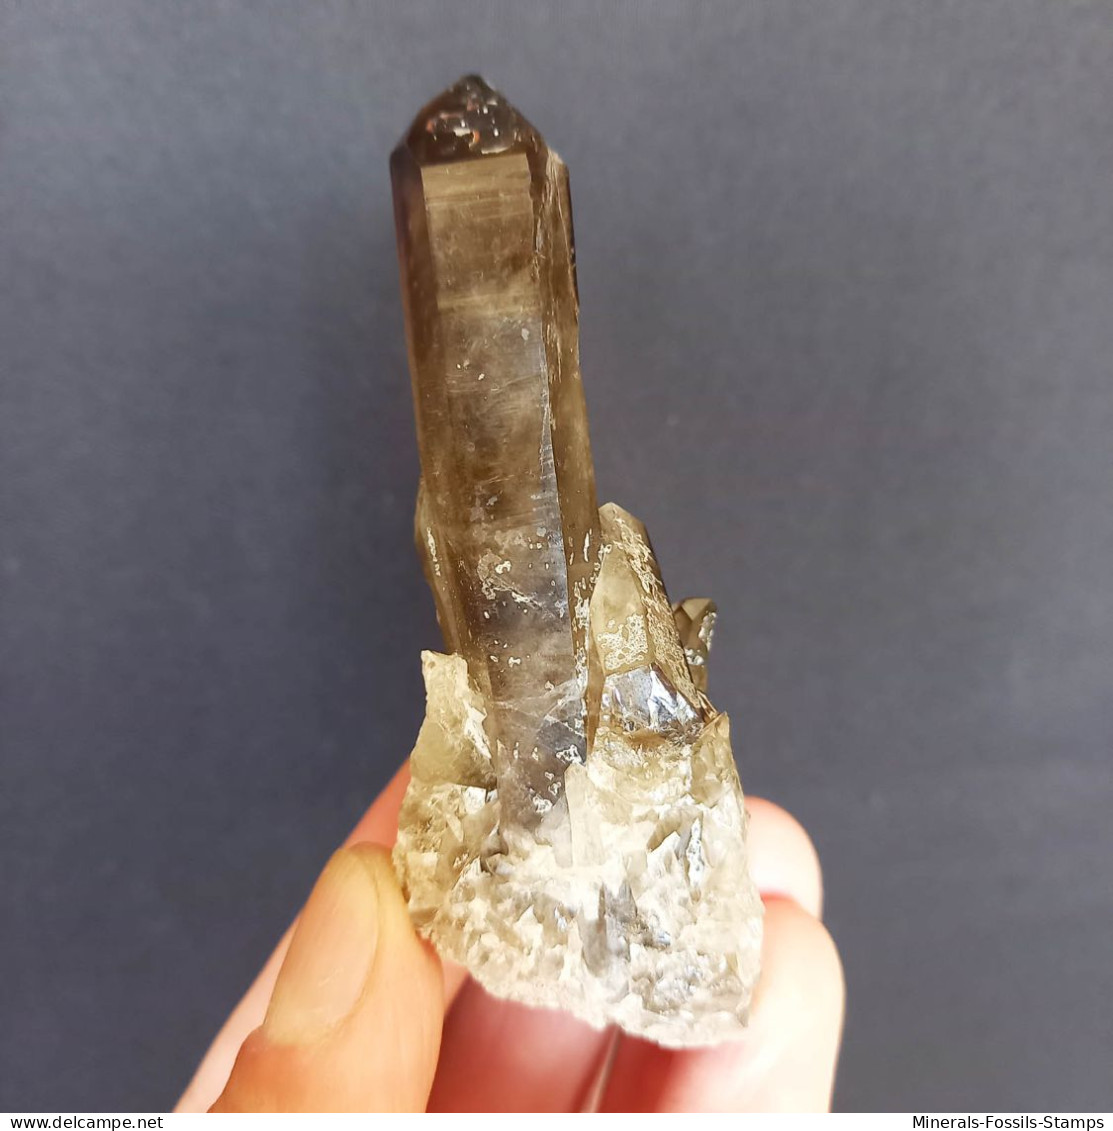 #01 – SCHÖNE MORIONE QUARZ Kristalle (Kara-Oba, Moiynkum, Jambyl, Kasachstan) - Mineralien